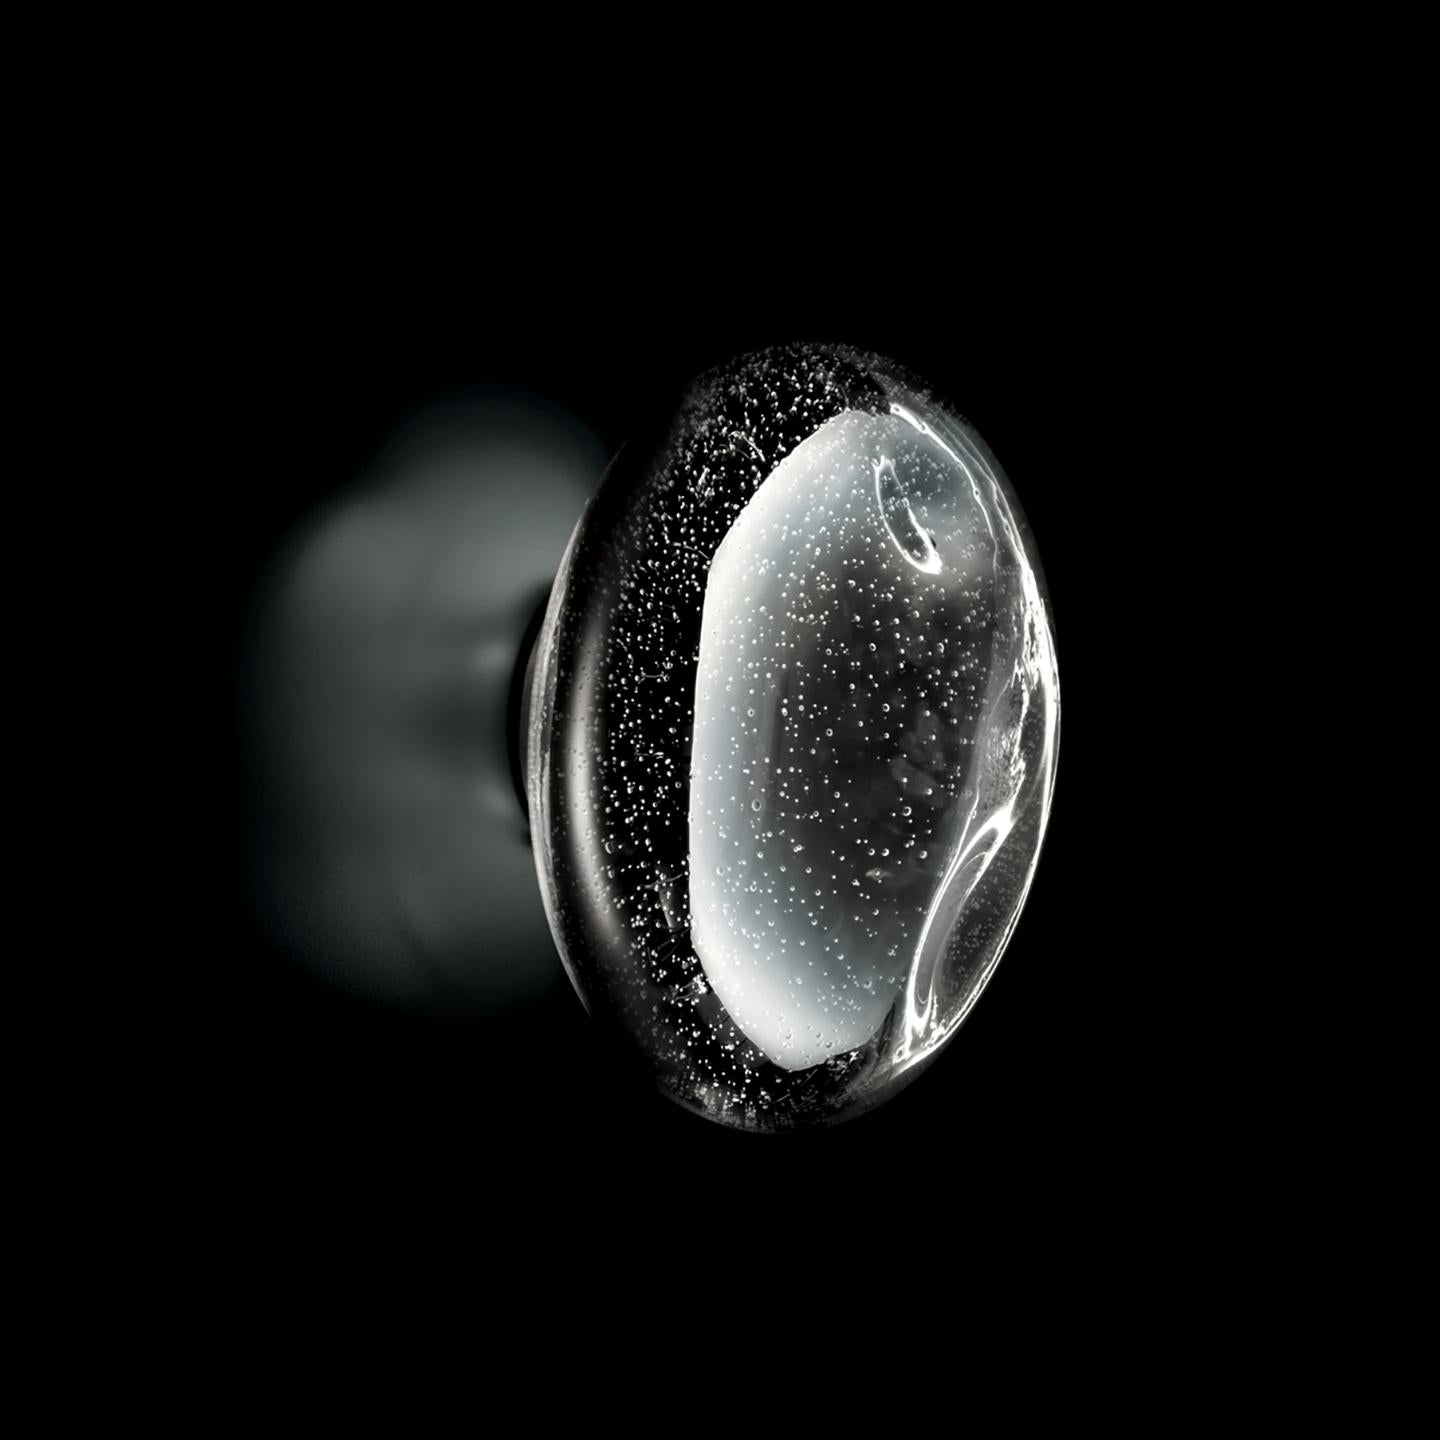 Avec Mercure, Patrick Jouin a exploré une technique traditionnelle de soufflage du verre de Murano, le pulegoso, et l'a actualisée pour créer un luminaire résolument contemporain qui éblouit. Le Mercure est fabriqué en ajoutant un brouillard d'eau